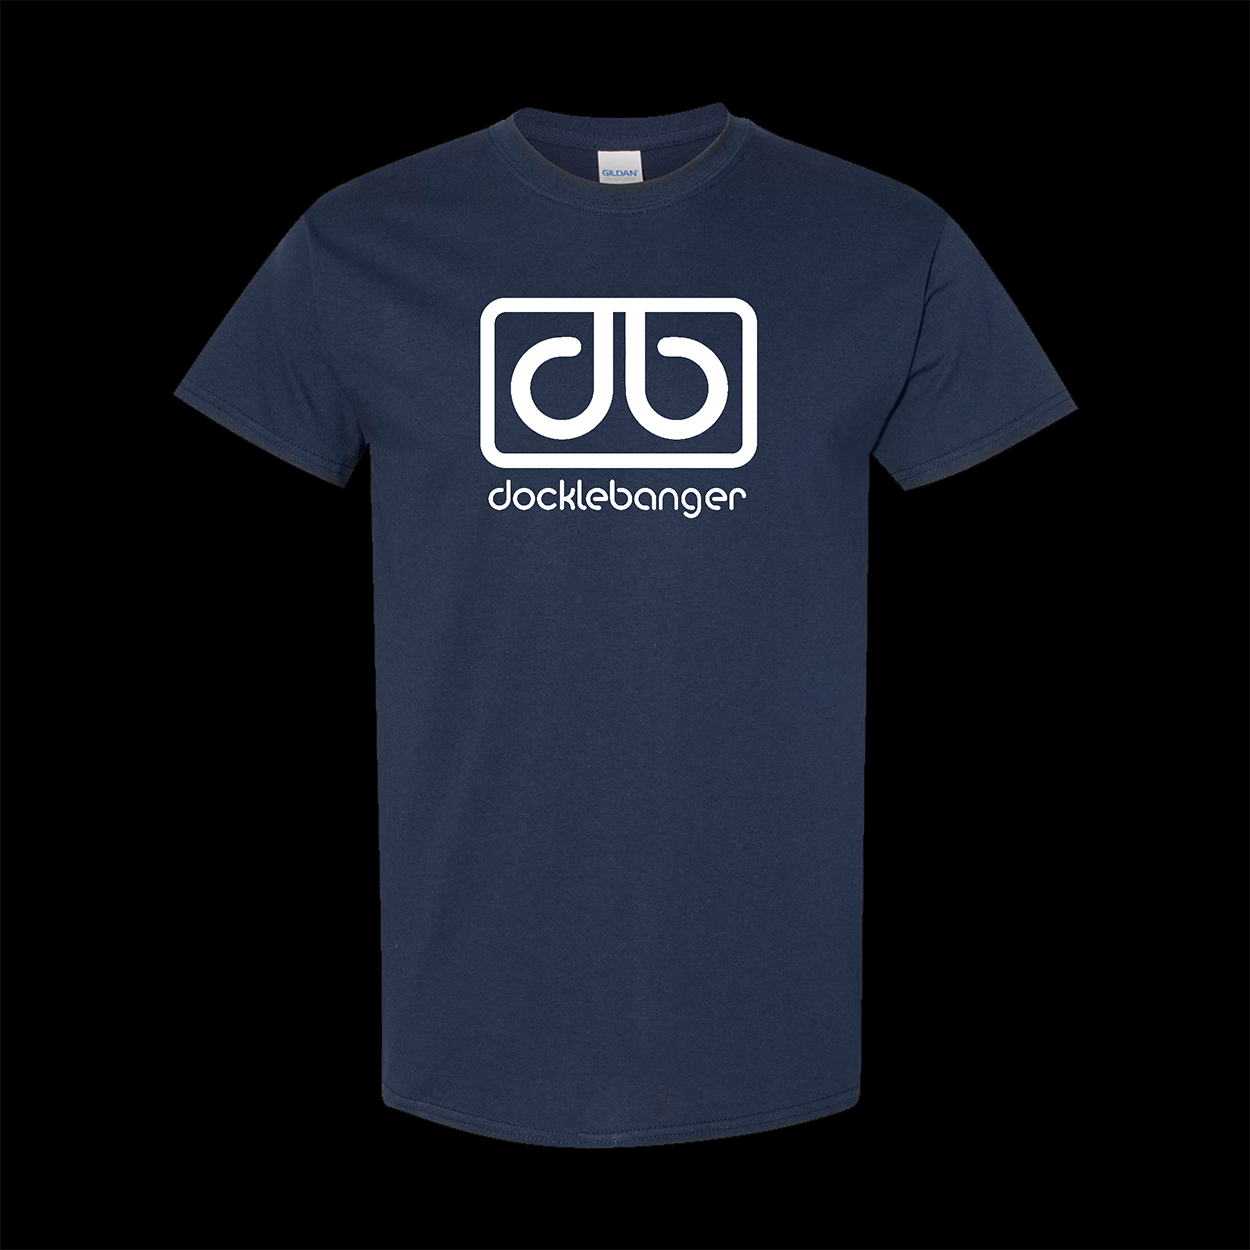 Docklebanger navy t-shirt